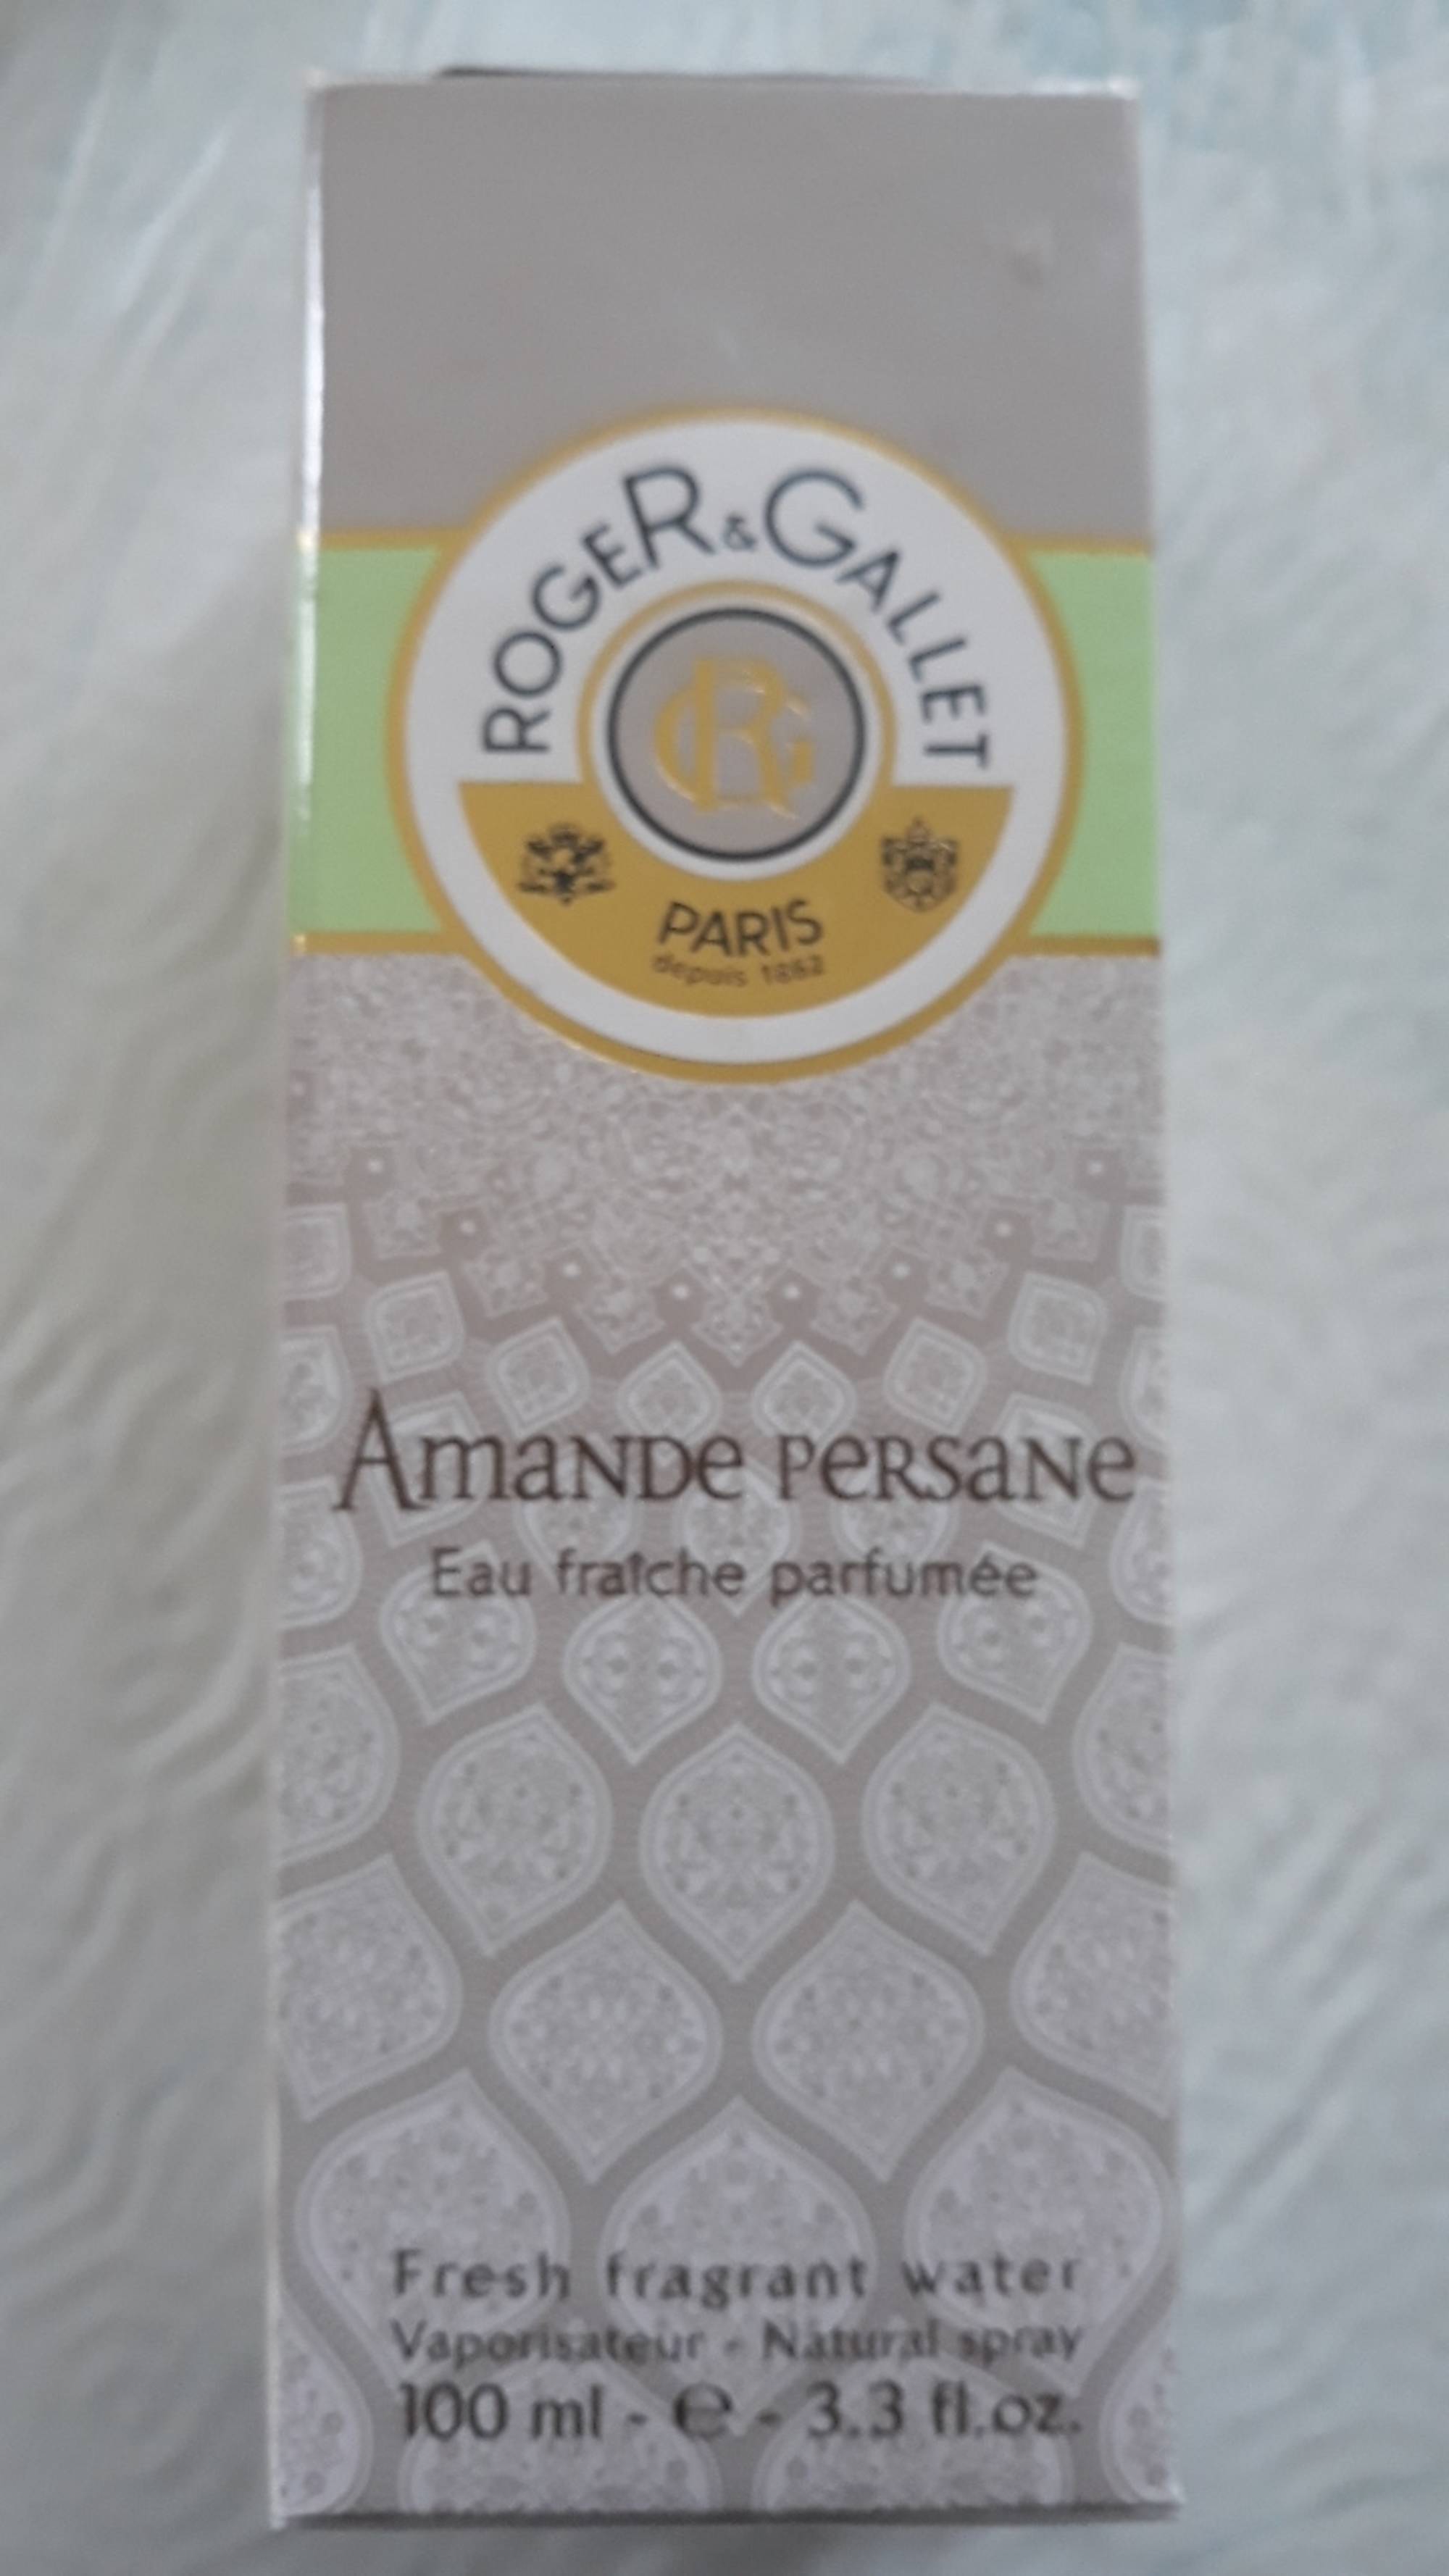 ROGER & GALLET - Amande persane - Eau fraîche parfumée